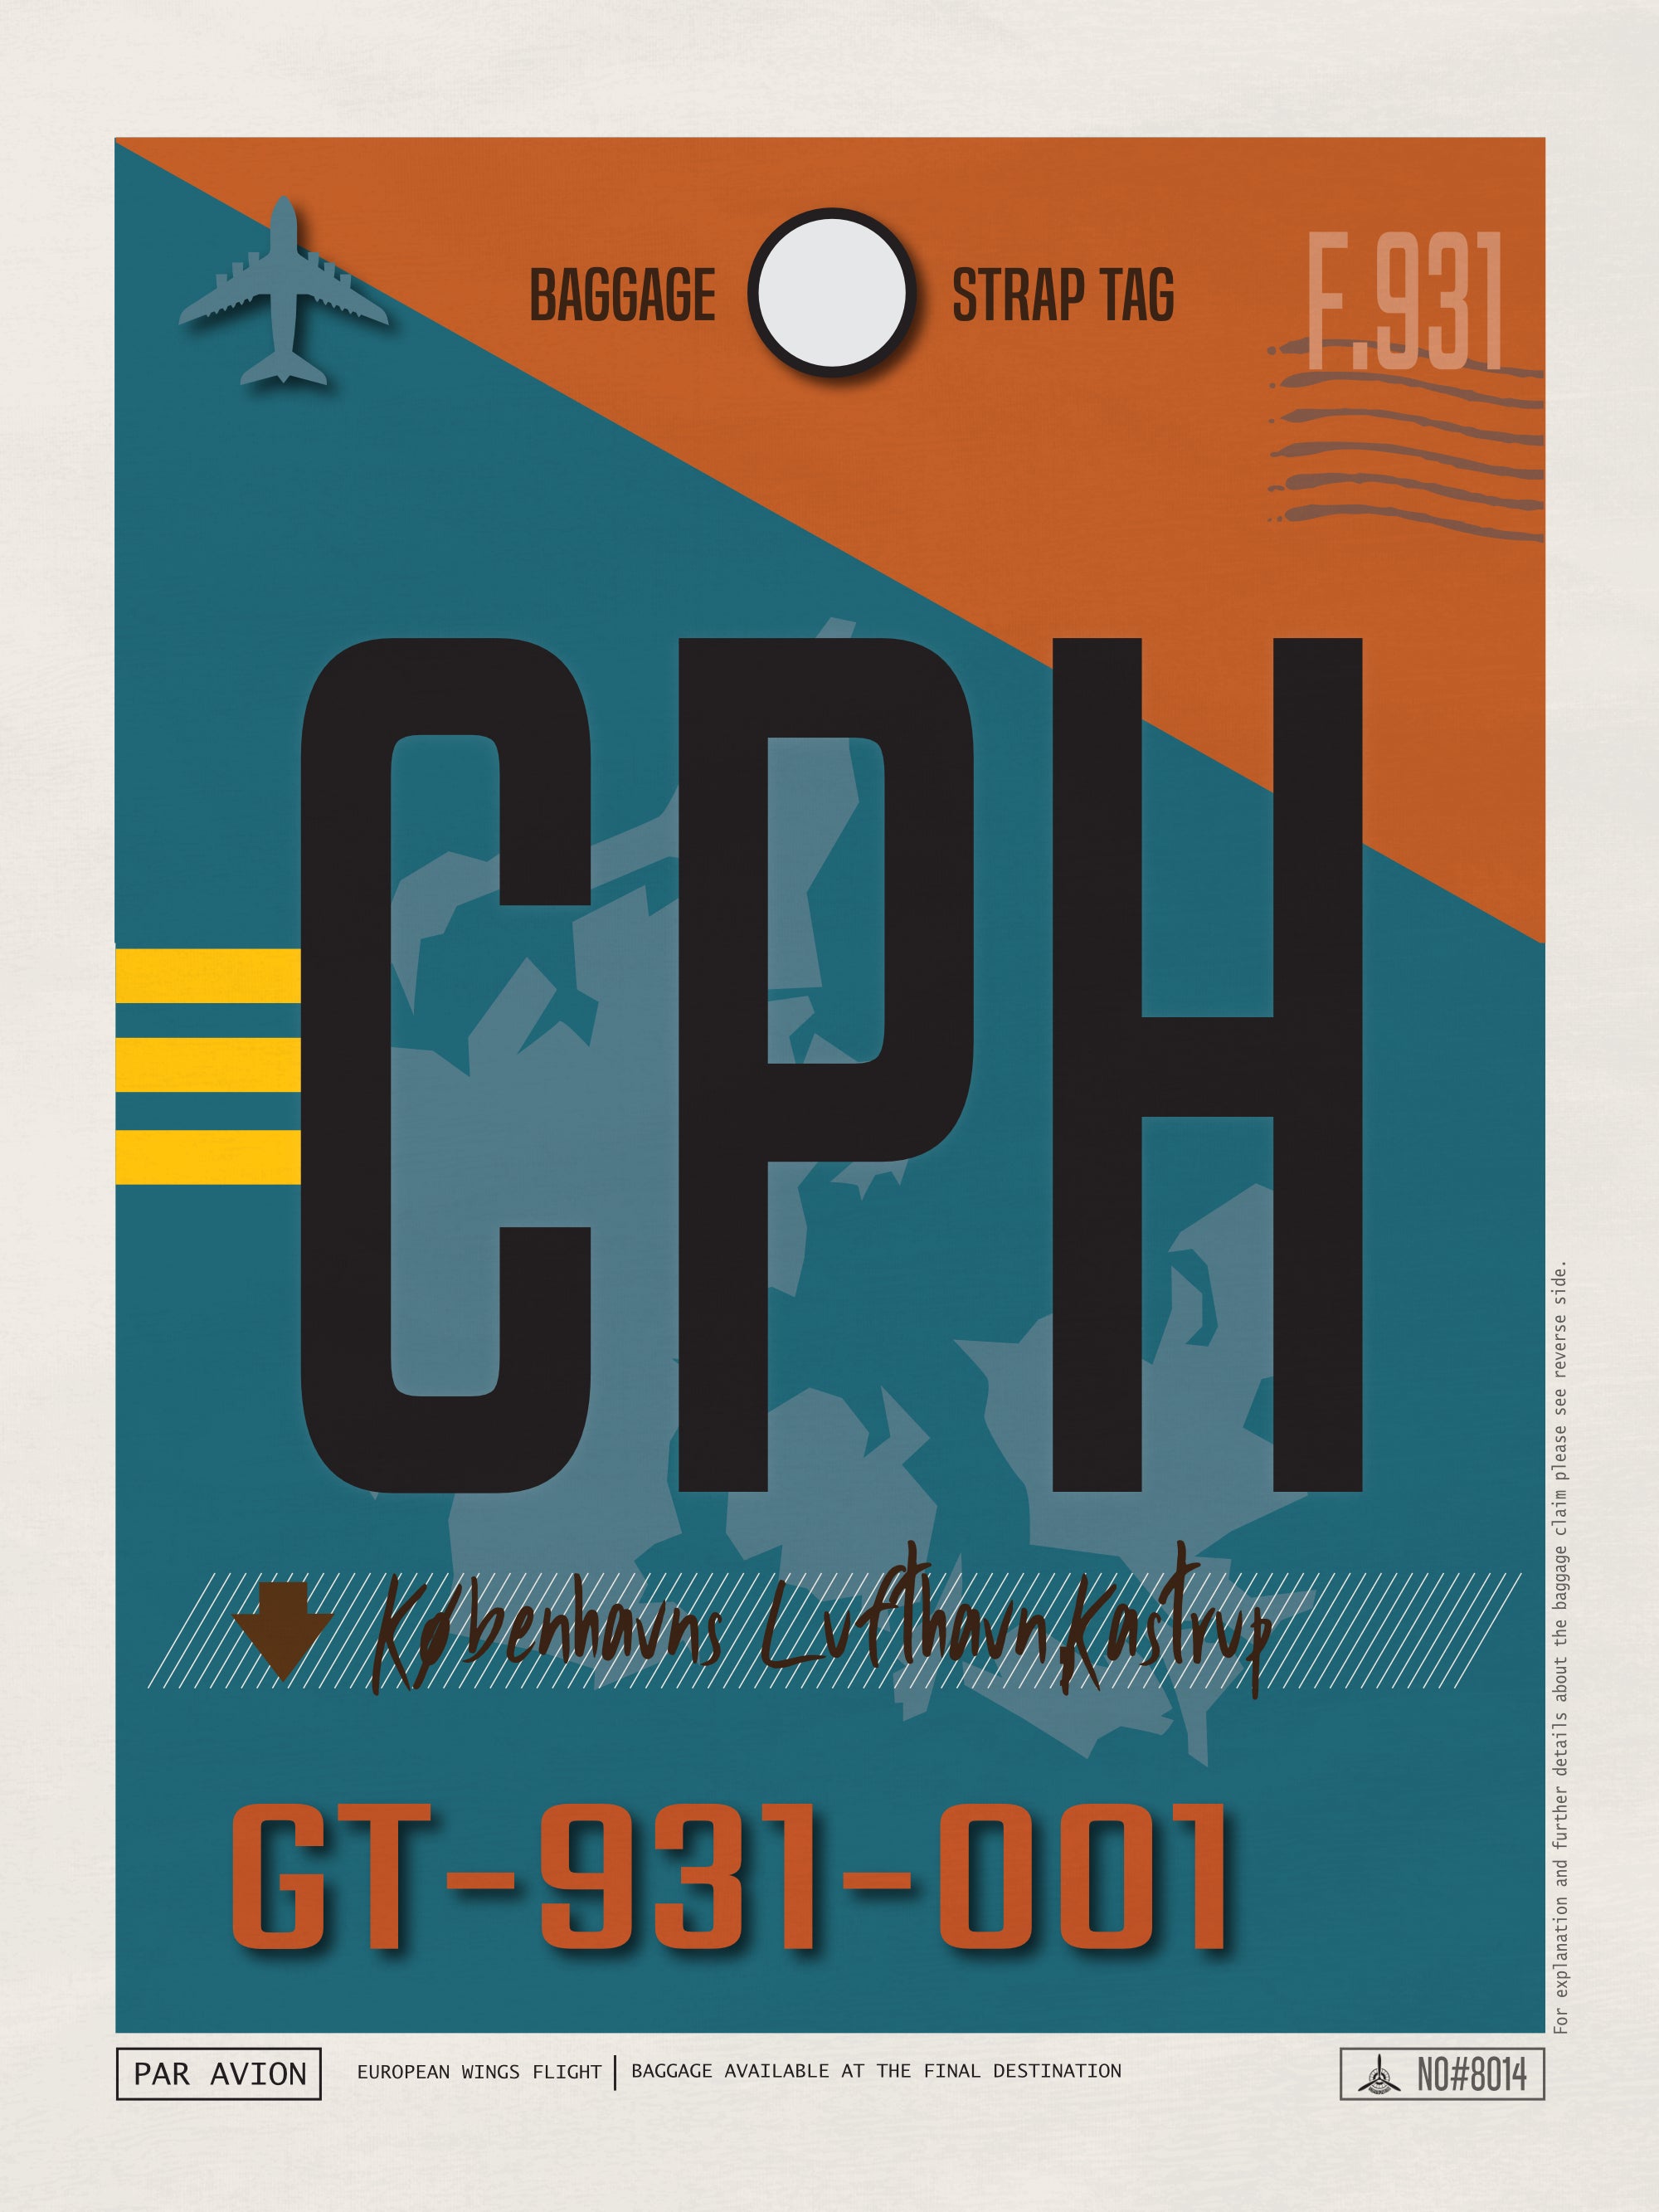 Copenhagen, Denmark - CPH Airport Code Poster